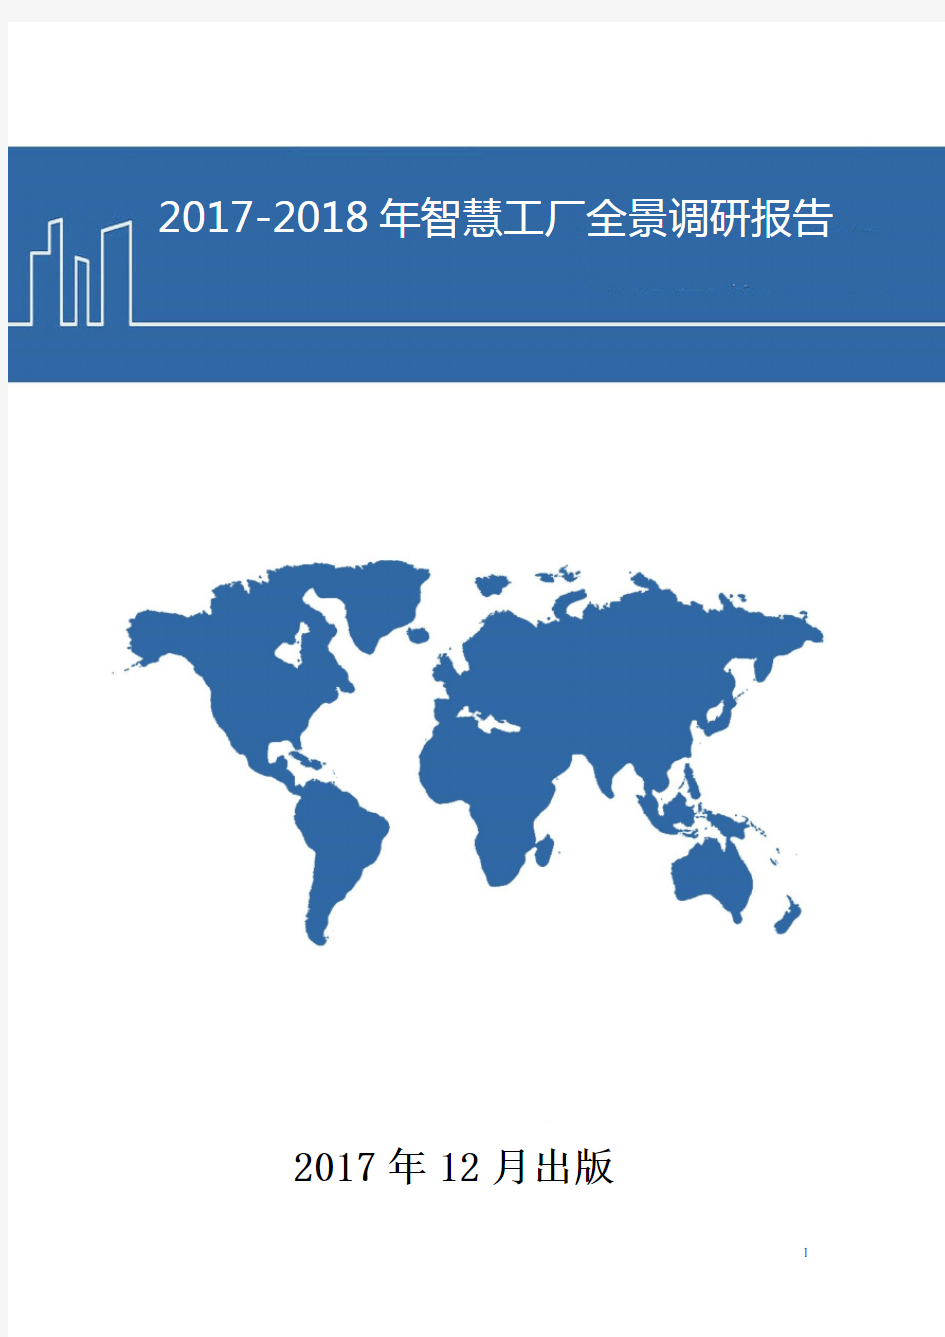 2017-2018年智慧工厂全景调研报告